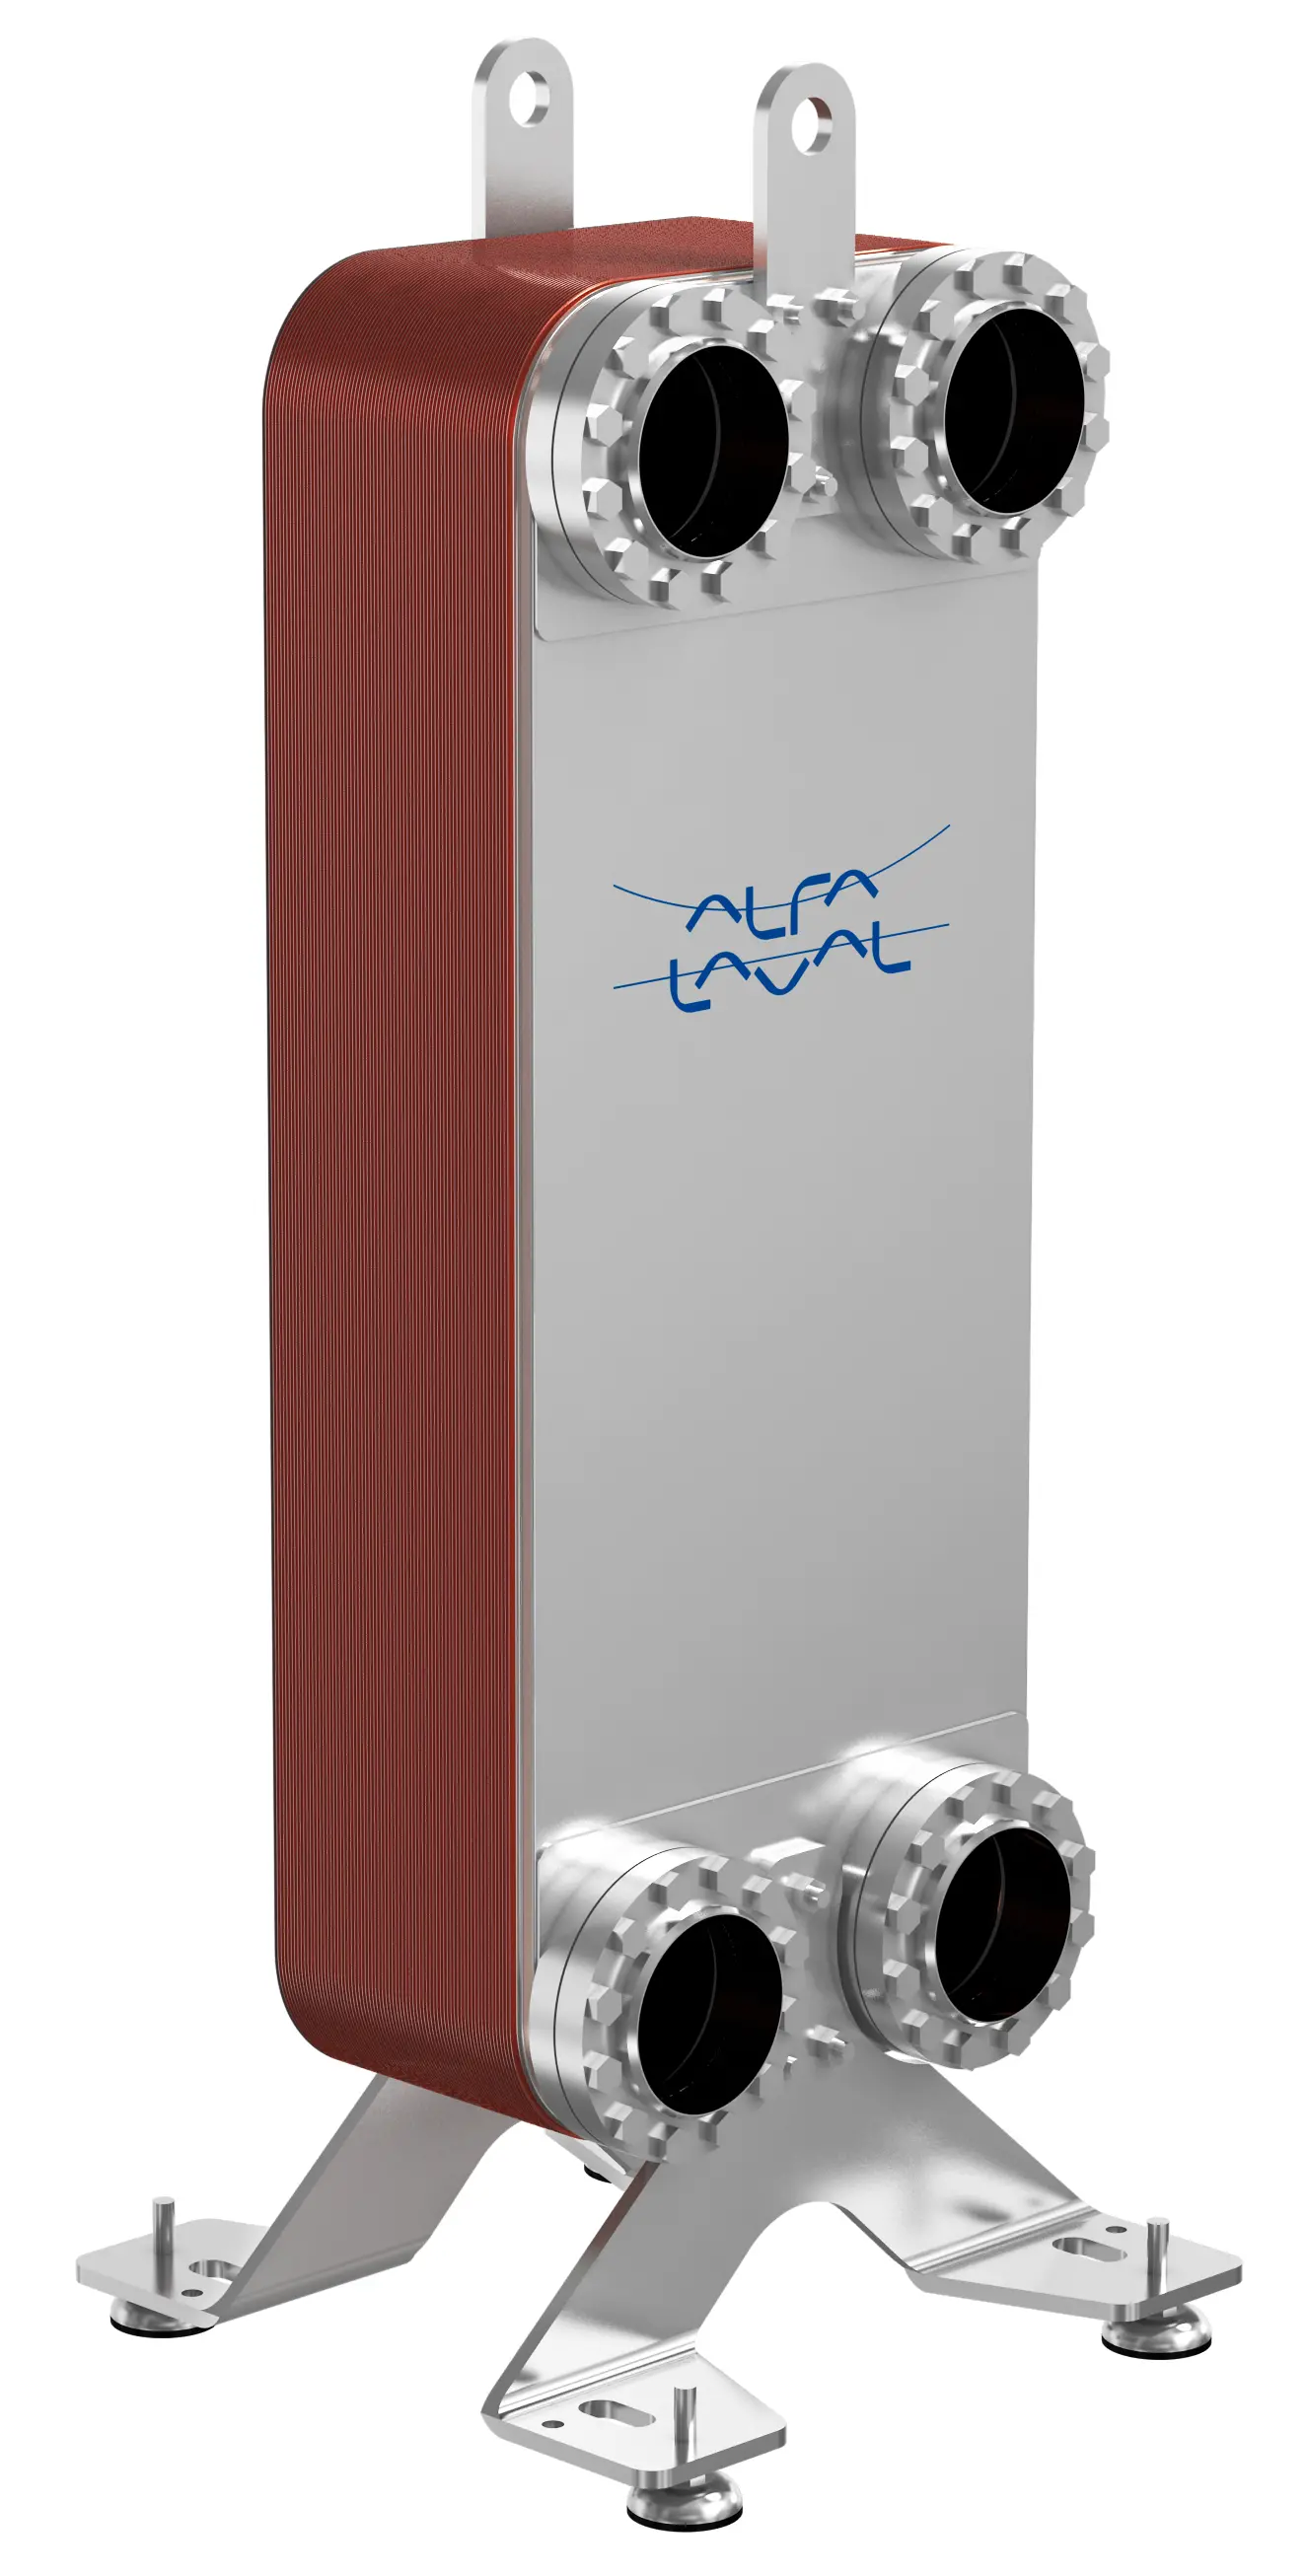 CB30-100H Alfa Laval Platten-Wärmetauscher für Kondensator-Anwendung